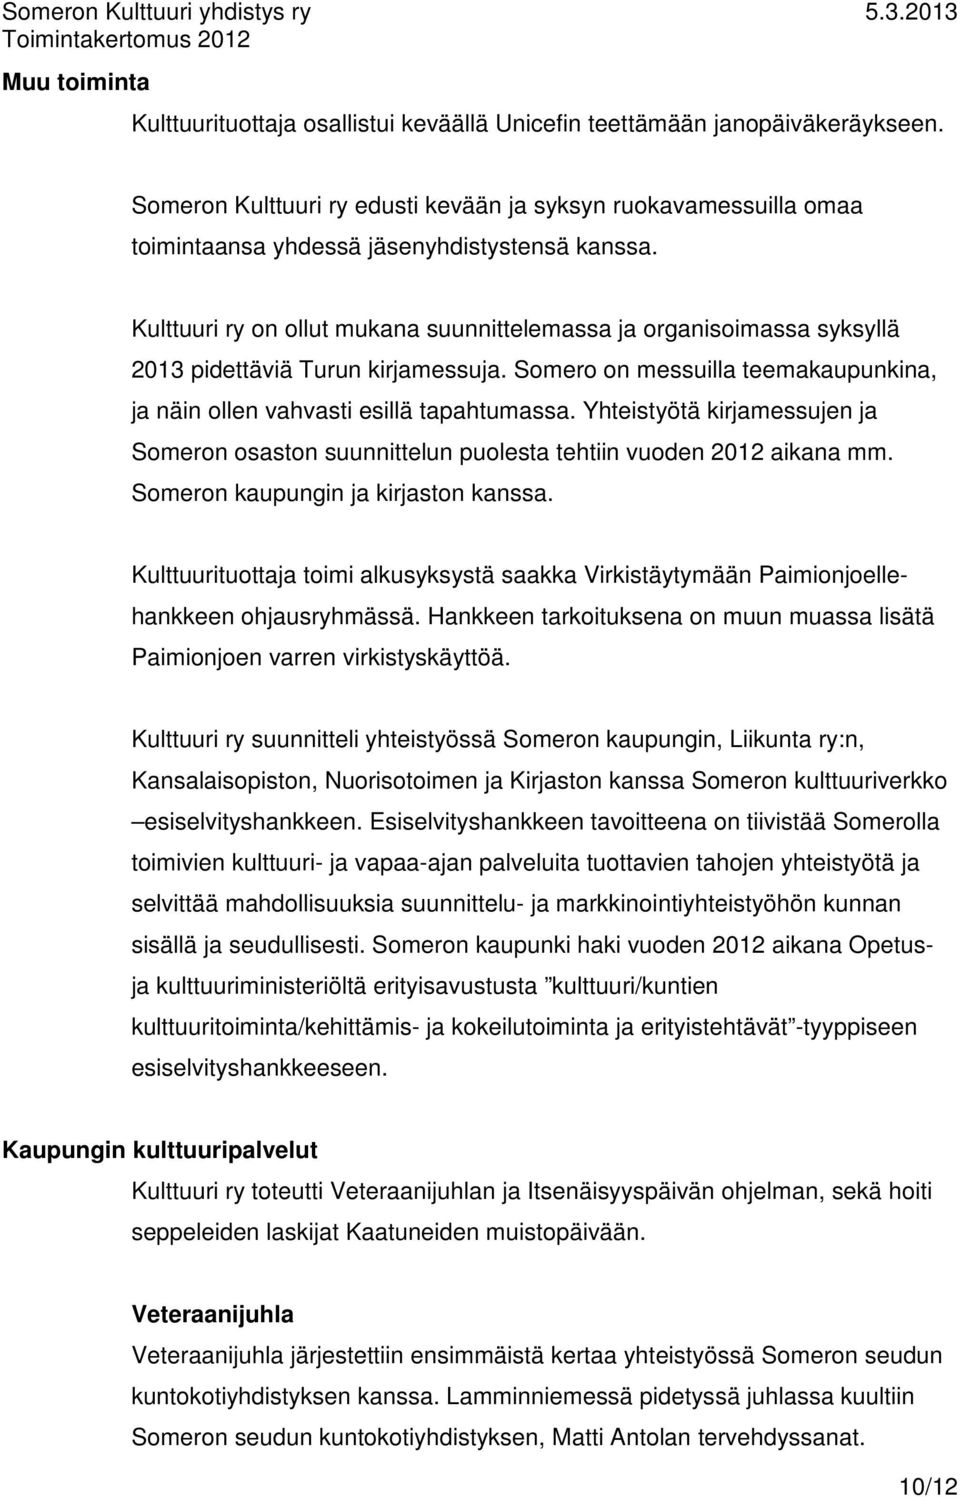 Kulttuuri ry on ollut mukana suunnittelemassa ja organisoimassa syksyllä 2013 pidettäviä Turun kirjamessuja. Somero on messuilla teemakaupunkina, ja näin ollen vahvasti esillä tapahtumassa.